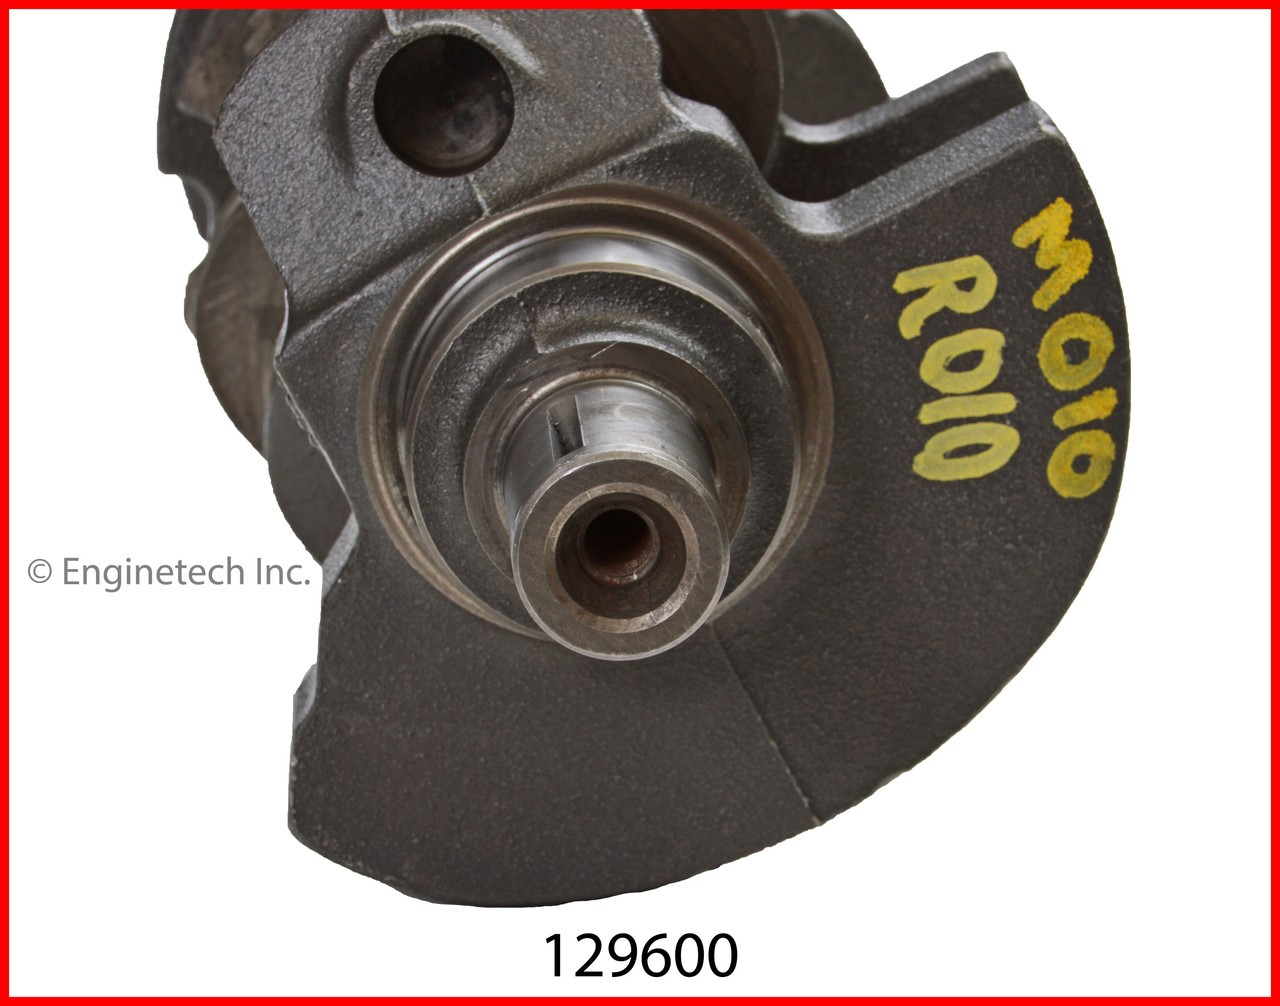 Crankshaft Kit - 2002 GMC Savana 1500 4.3L (129600.H71)